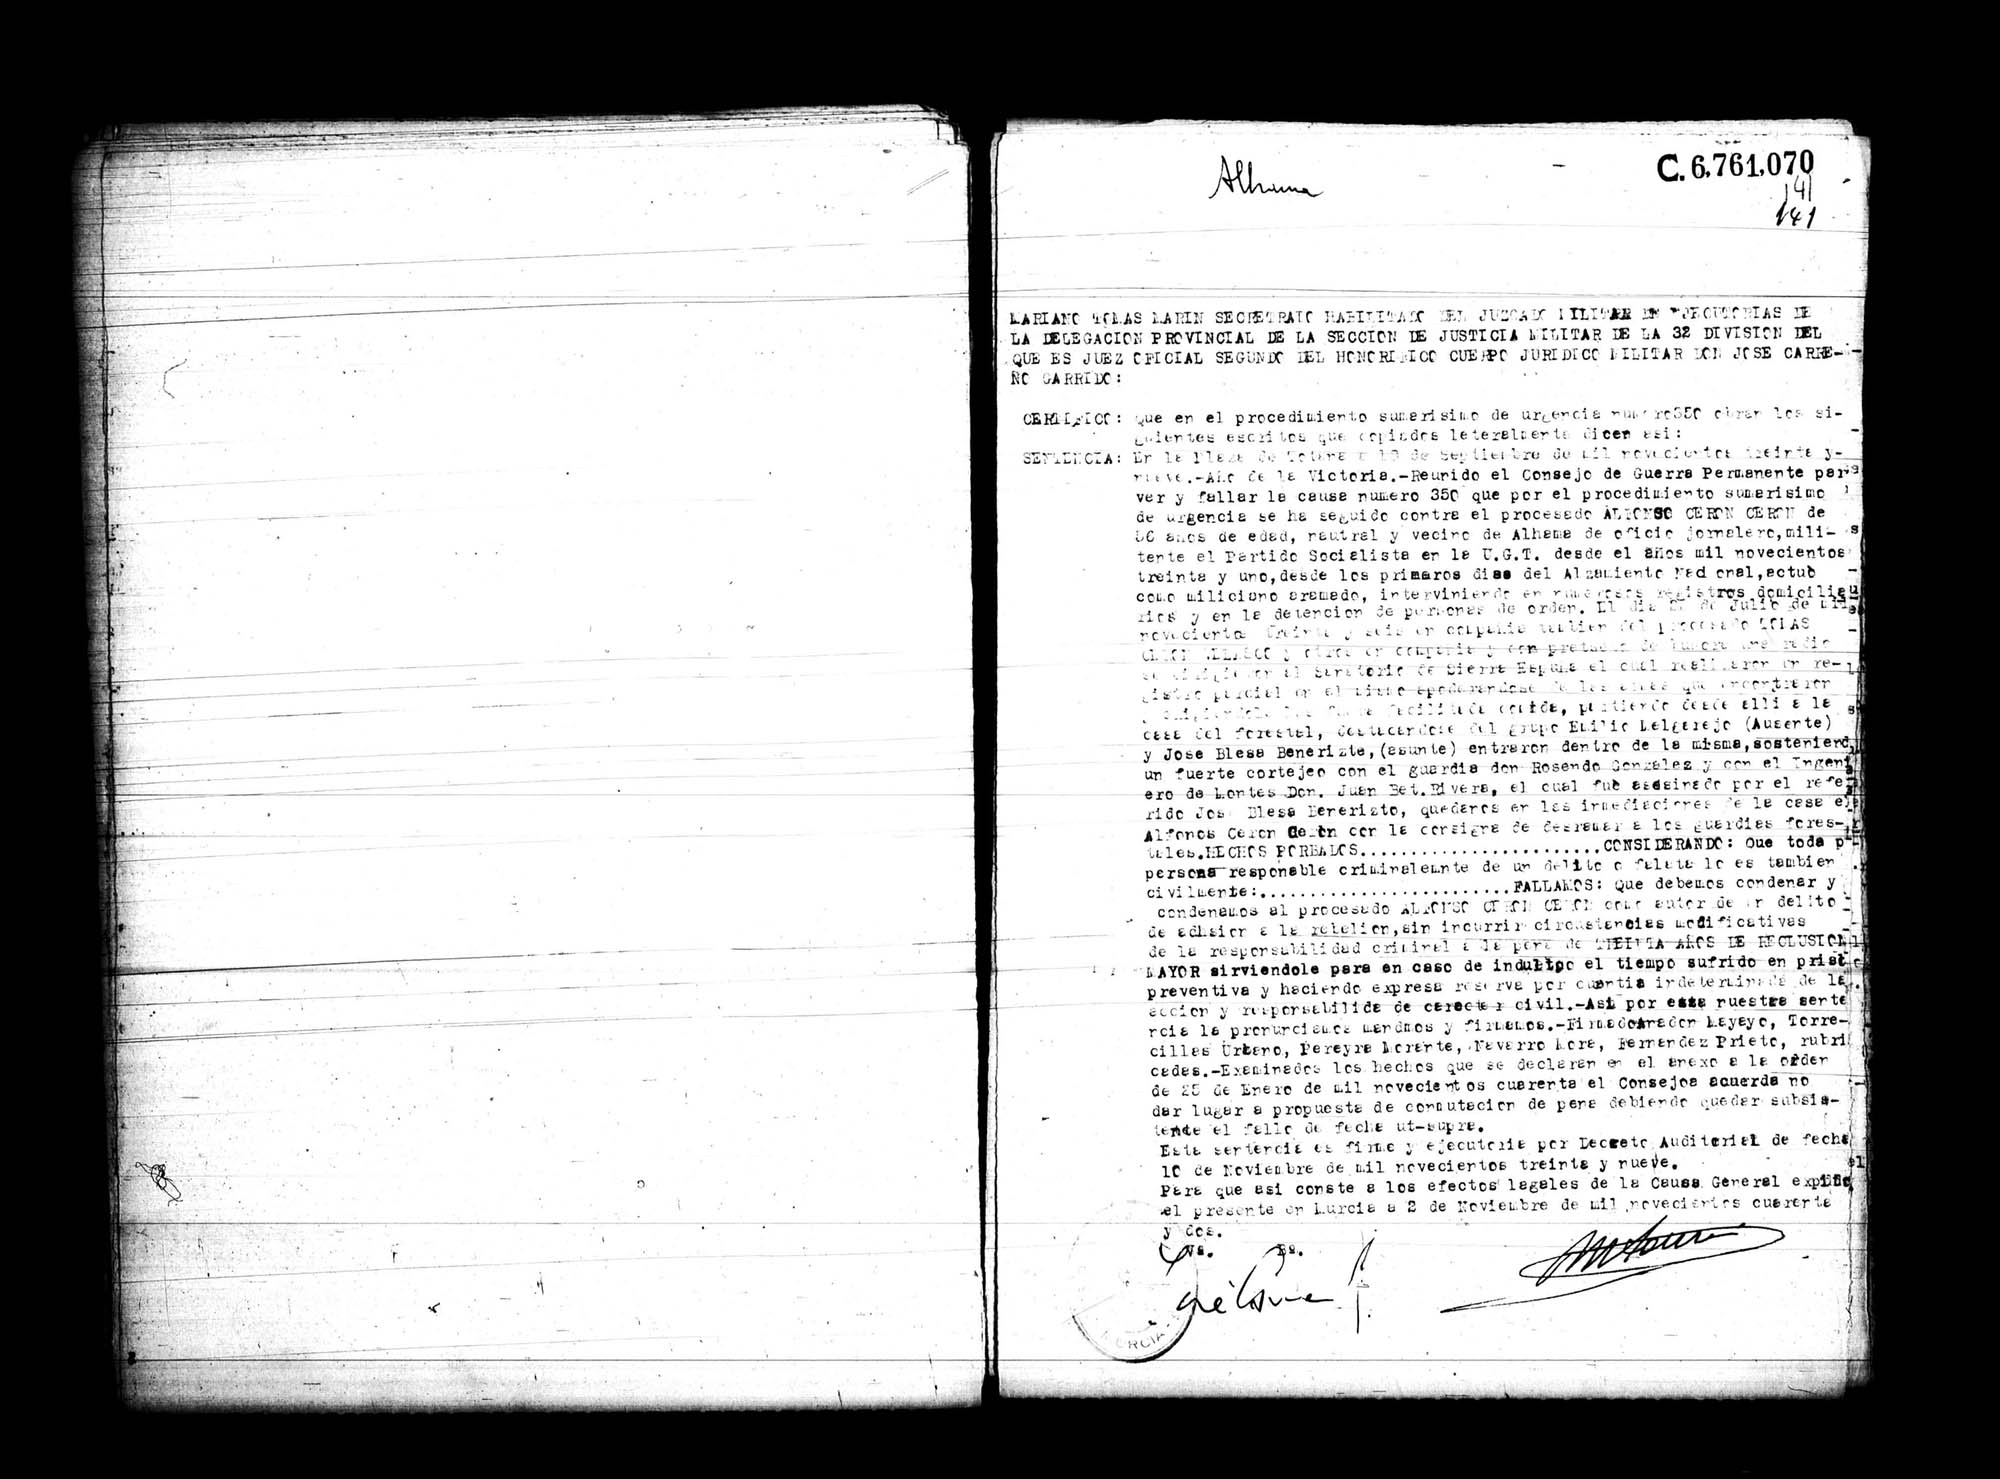 Certificado de la sentencia pronunciada contra Alfonso Cerón Cerón, causa 350, el 18 de septiembre de 1939 en Totana.